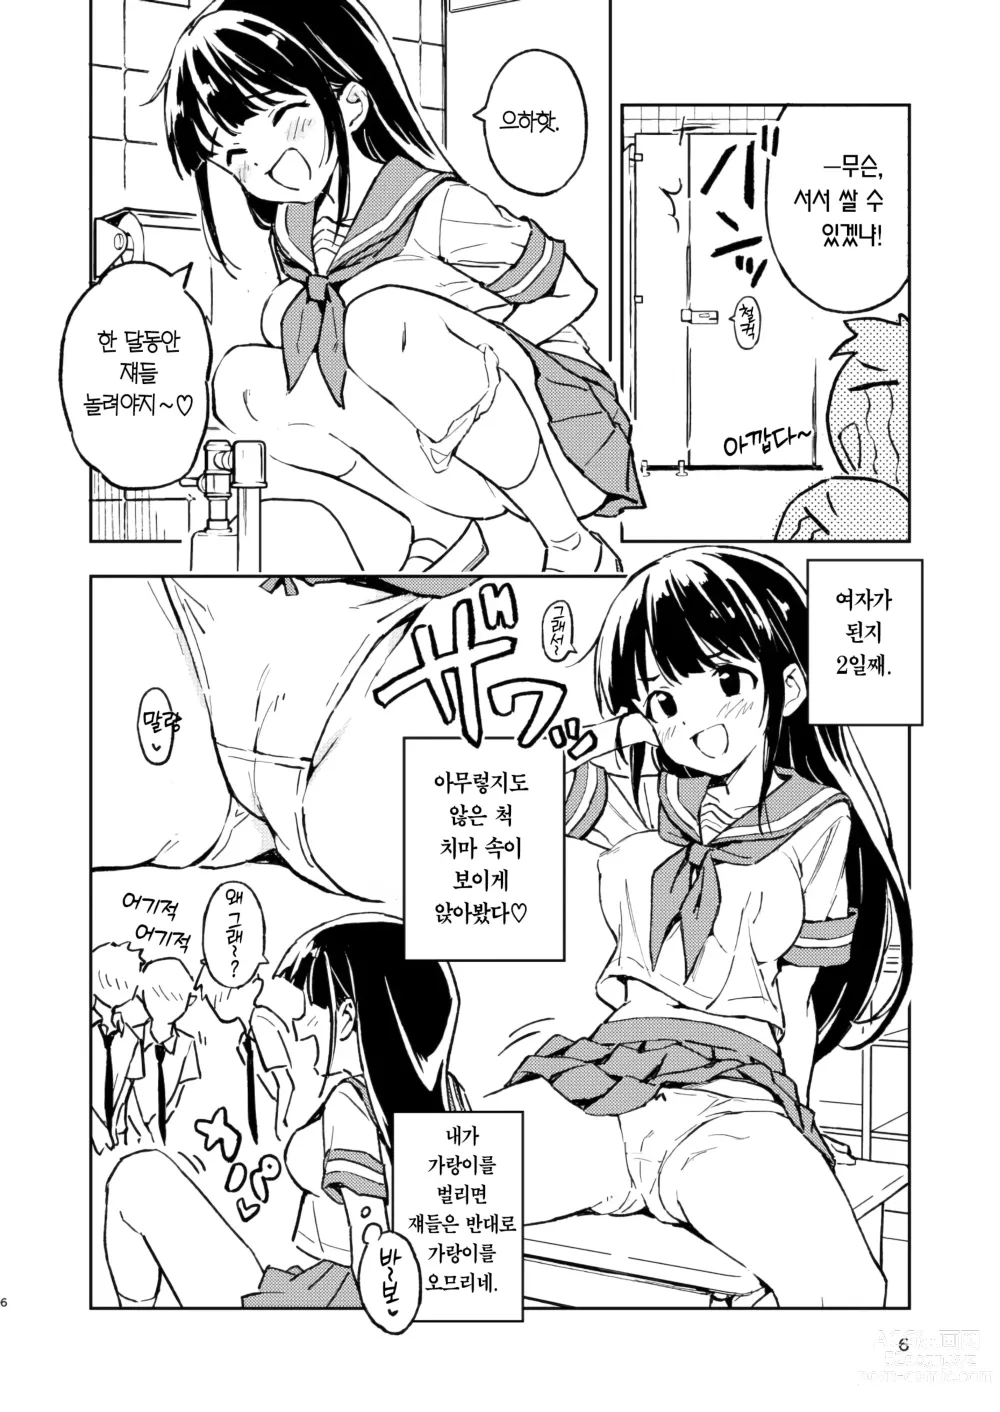 Page 6 of doujinshi 한 달 안에 임신 못하면 남자로 돌아가는 이야기